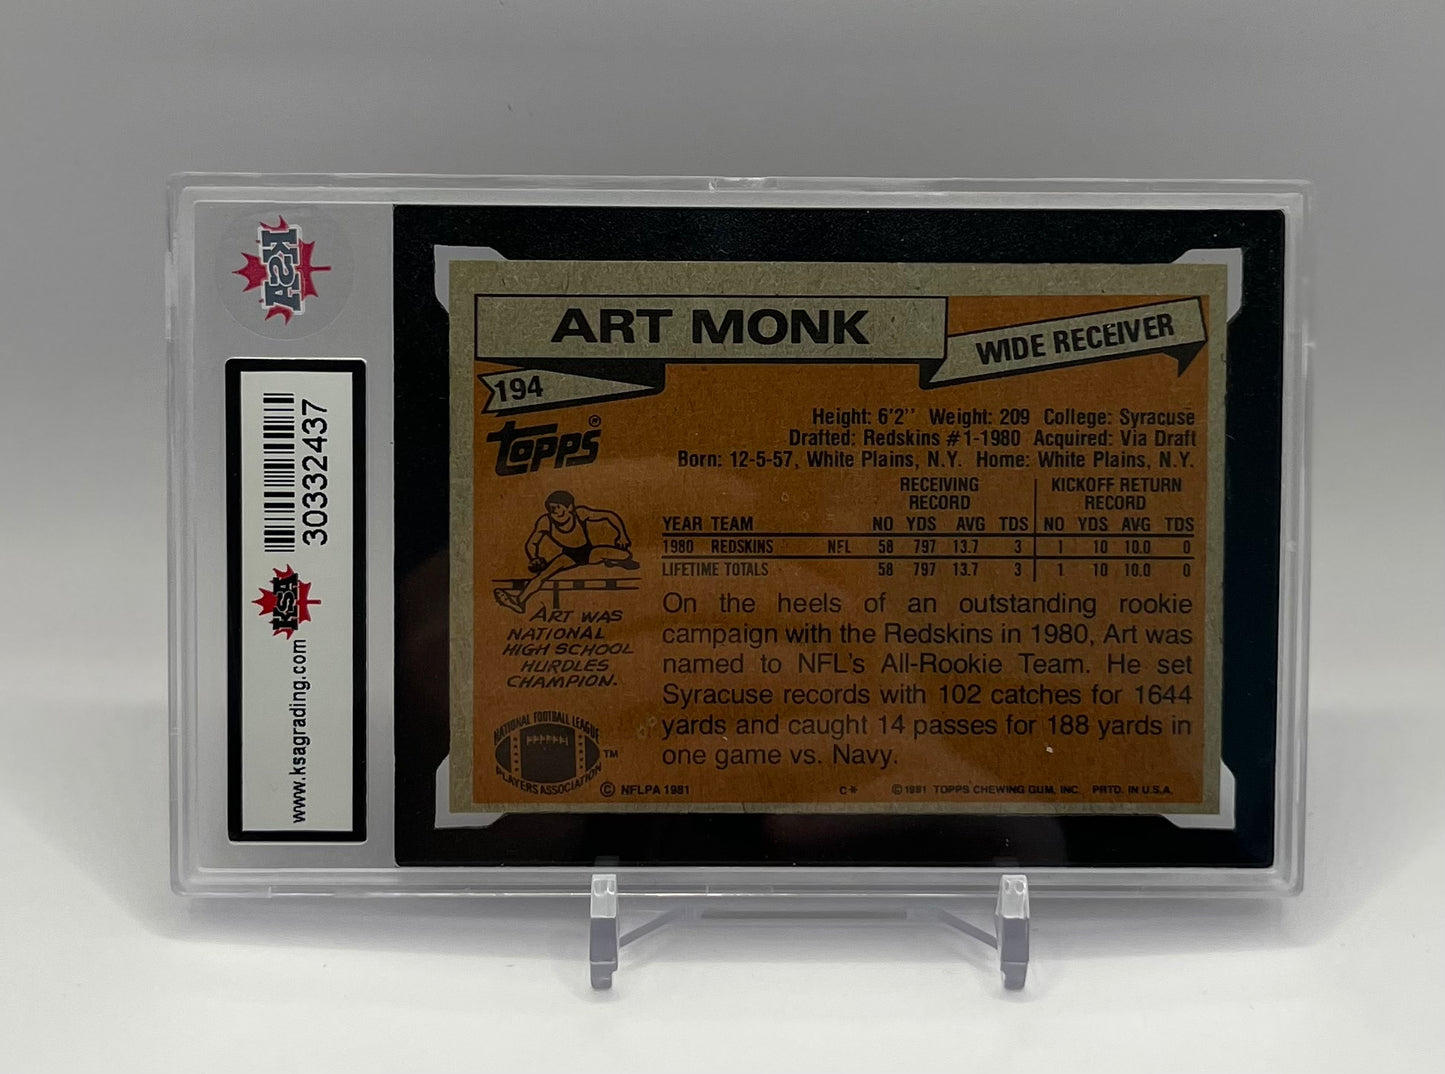 1981 #194 ART MONK TOPPS - KSA 7.5 NM+